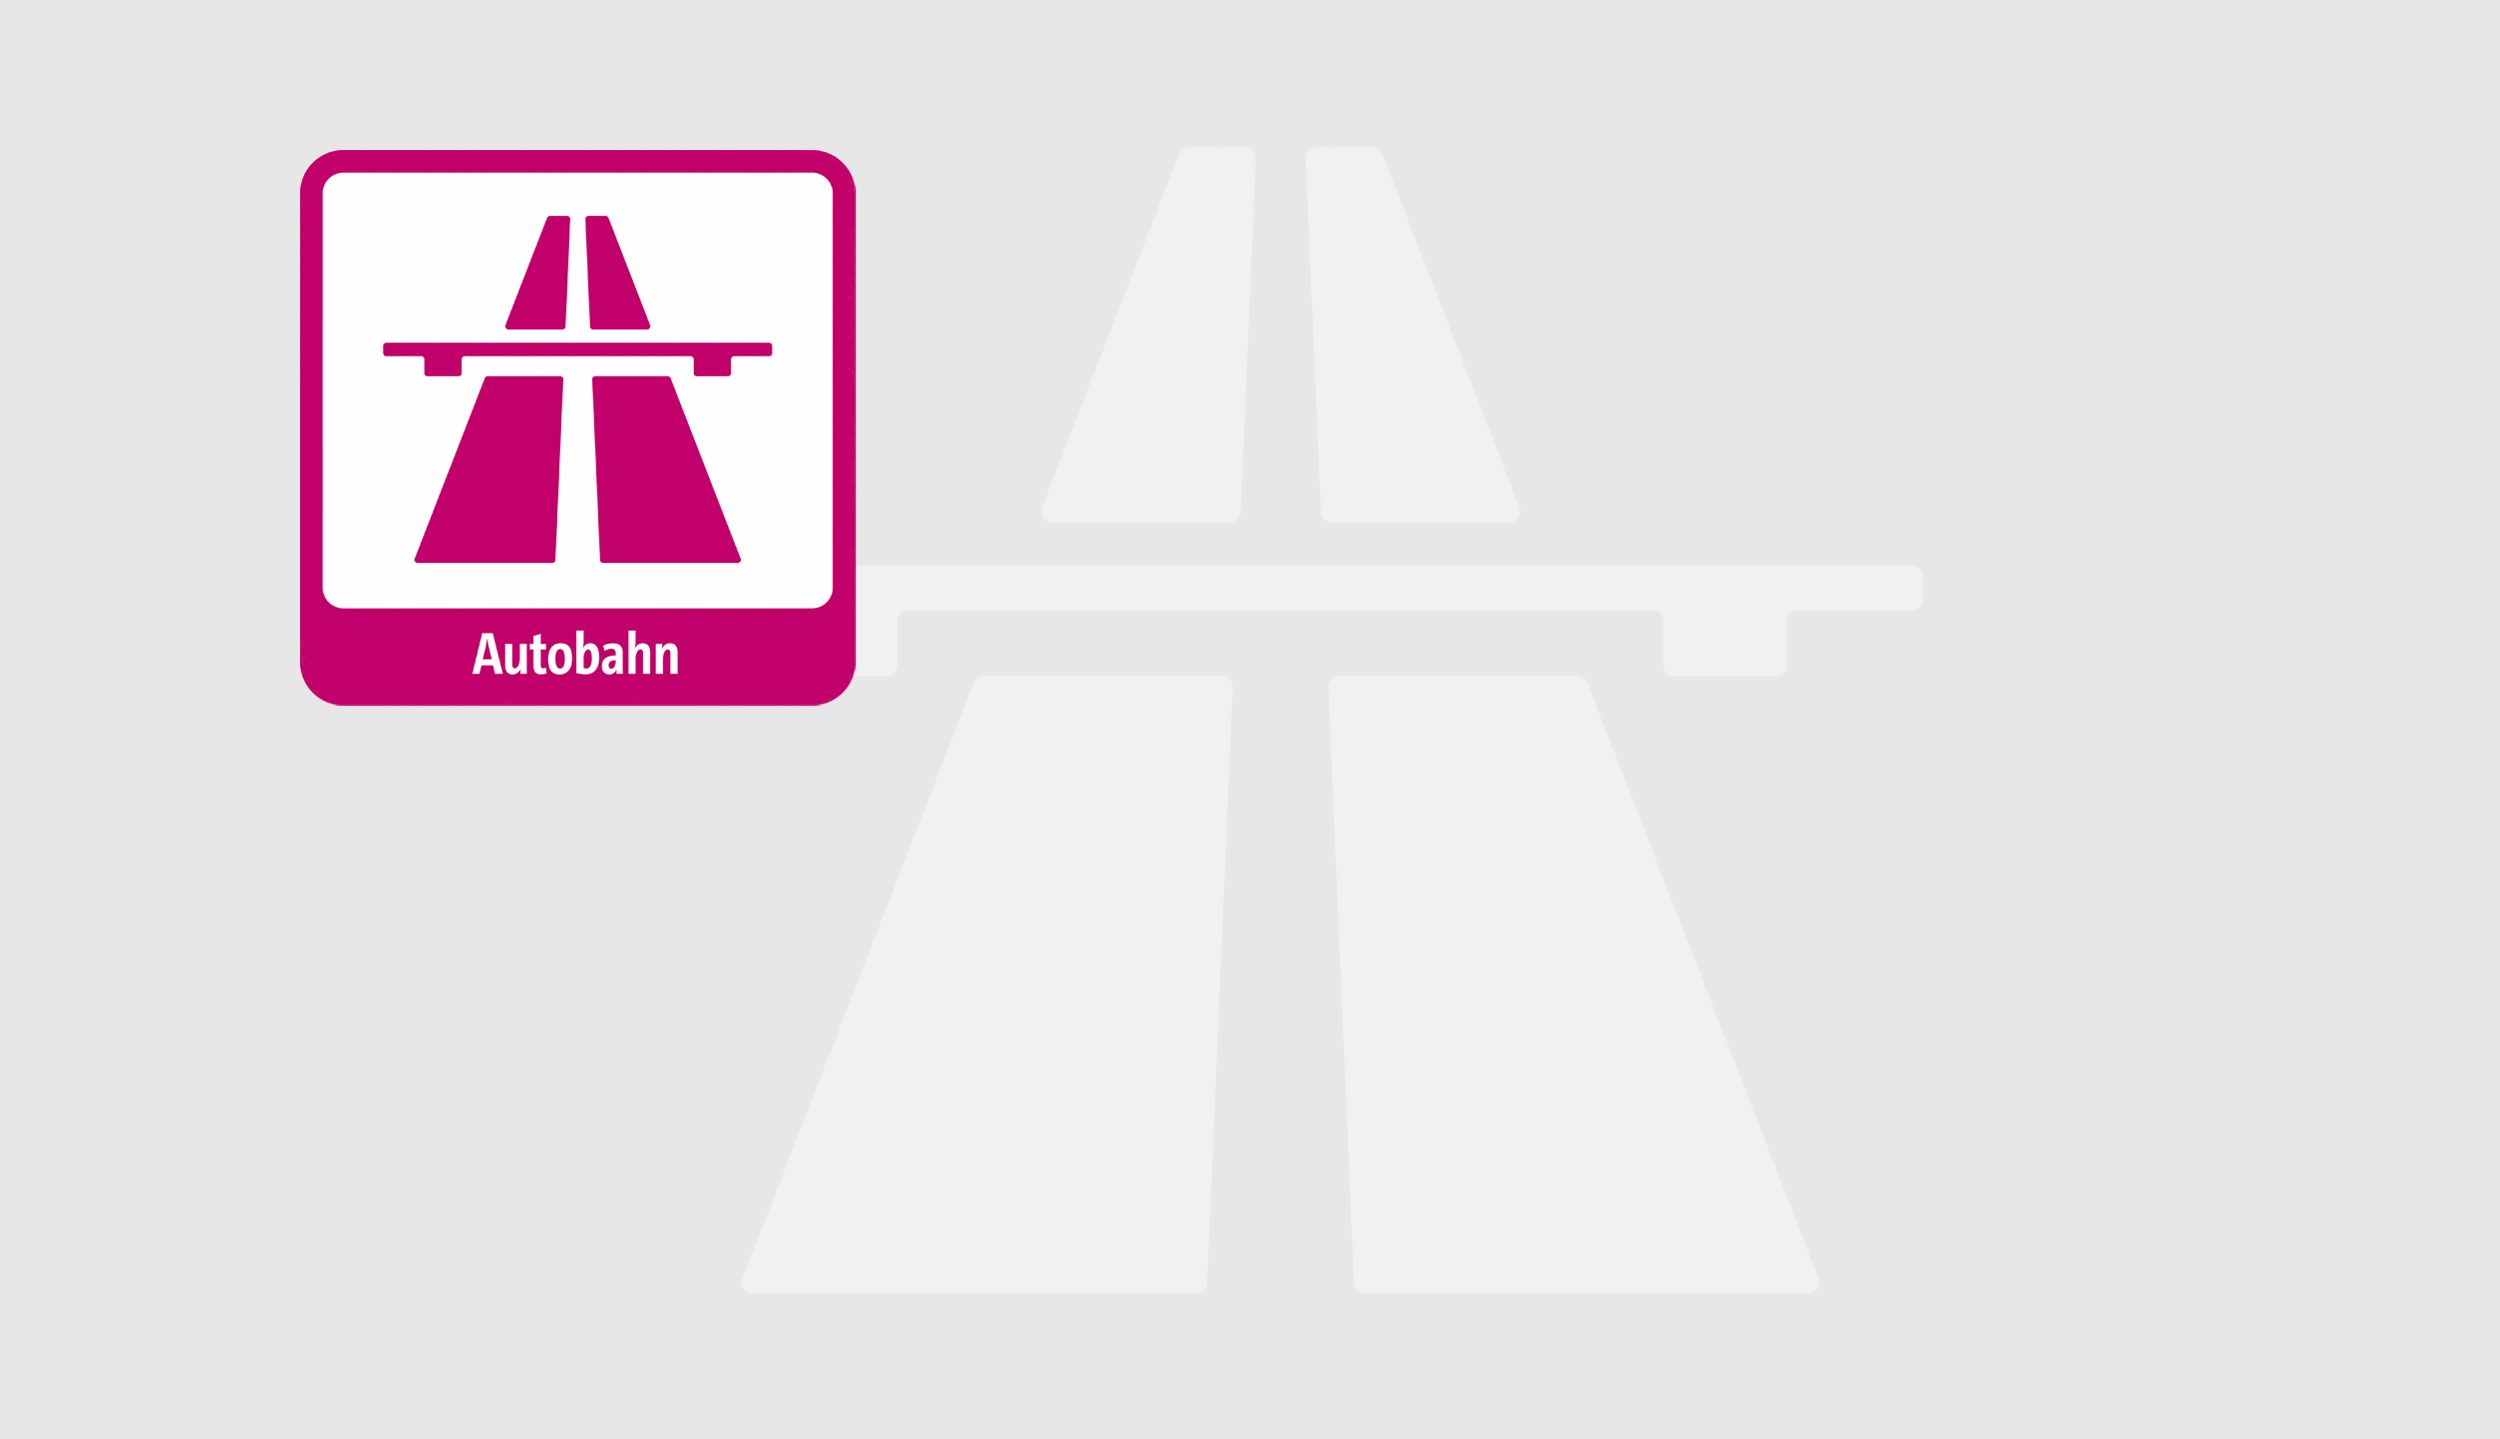 dbb fordert TV Digitalisierung für die Autobahn GmbH